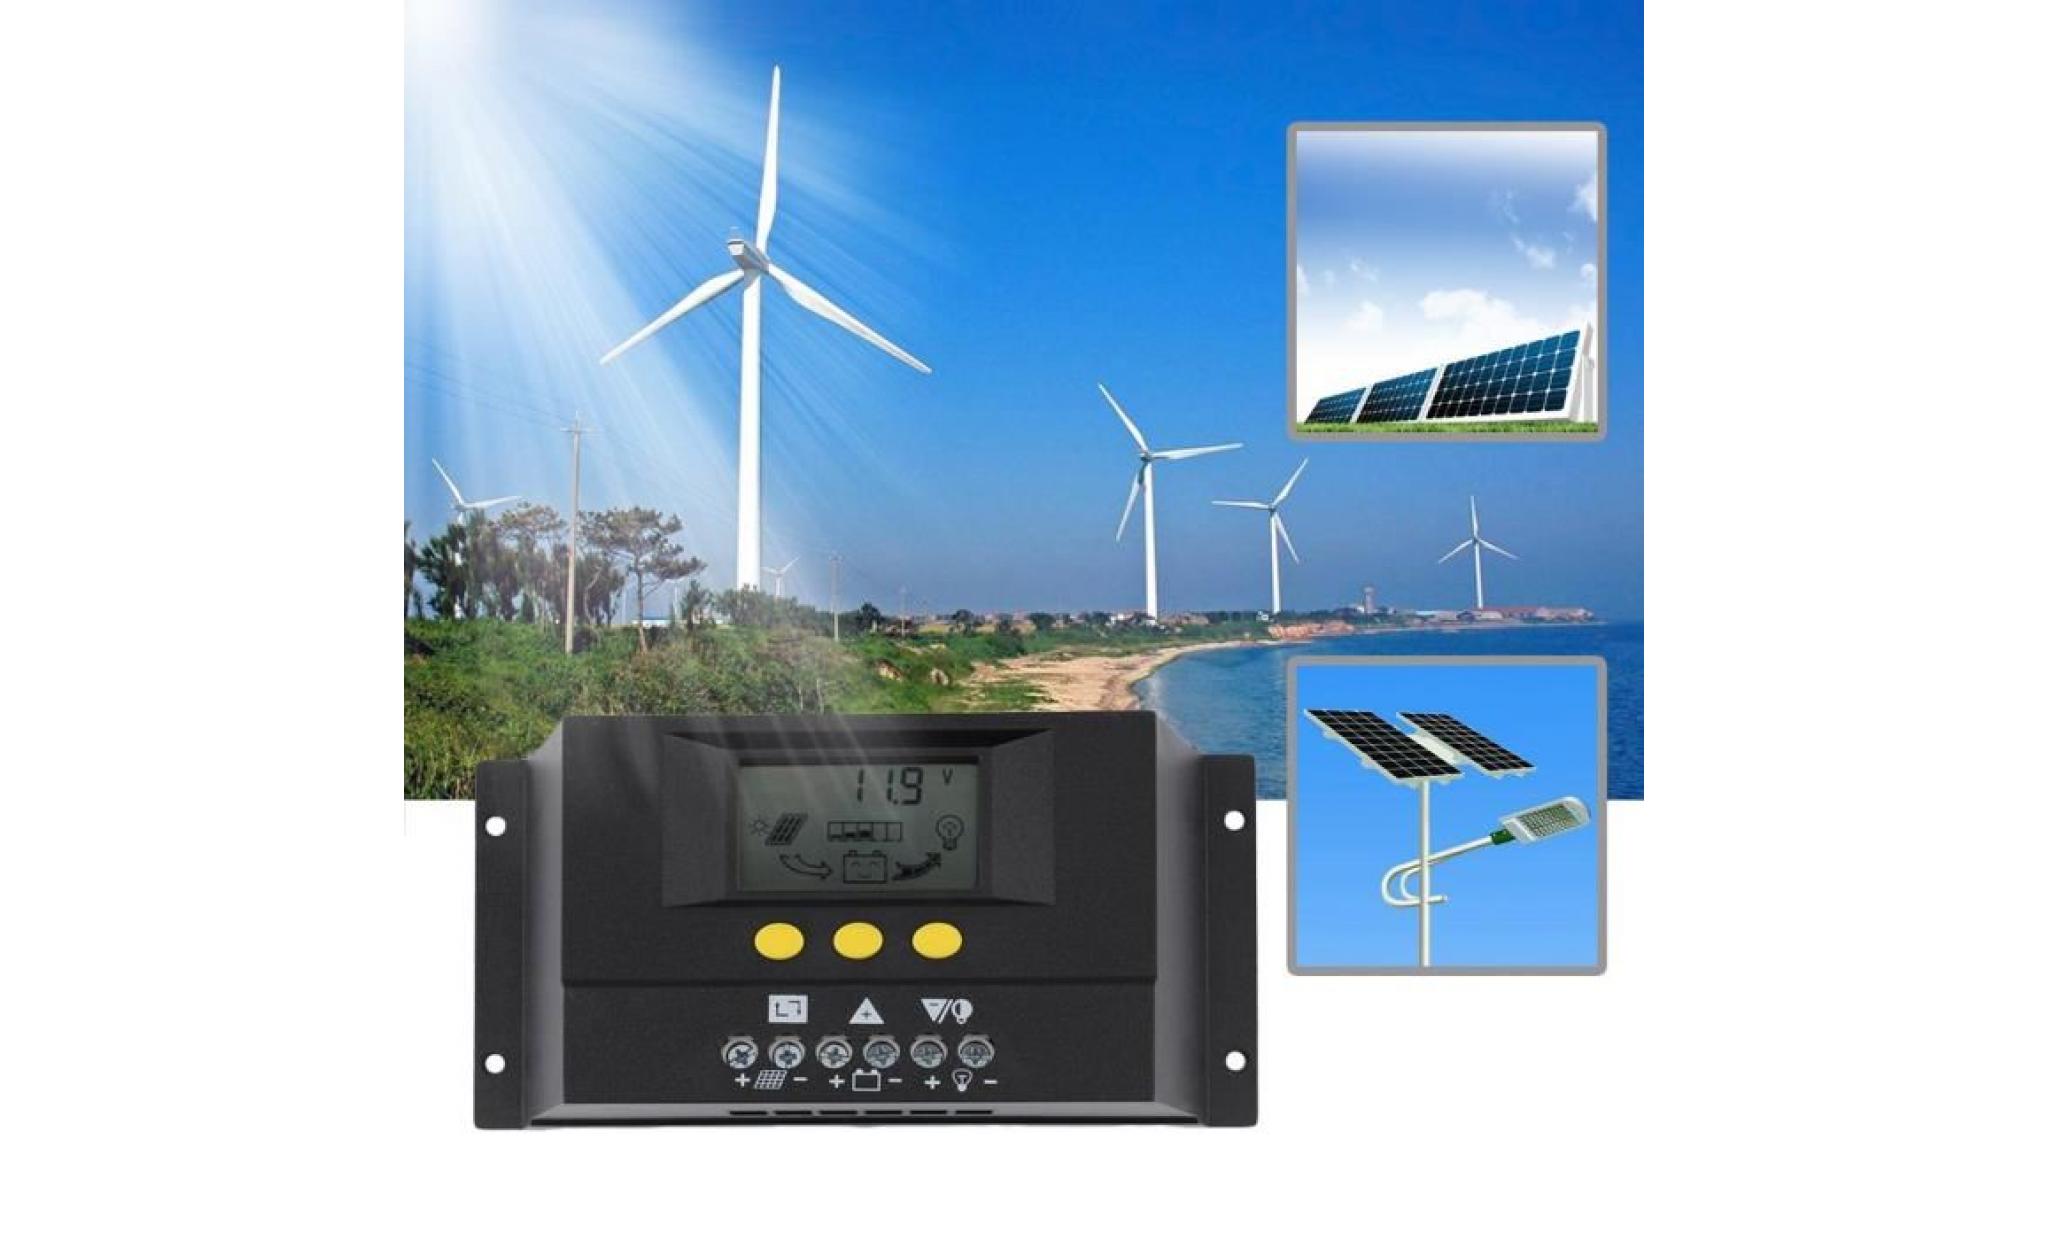 contrôleur de charge solaire affichage lcd régulateur batterie protection auto surcharge compensation température